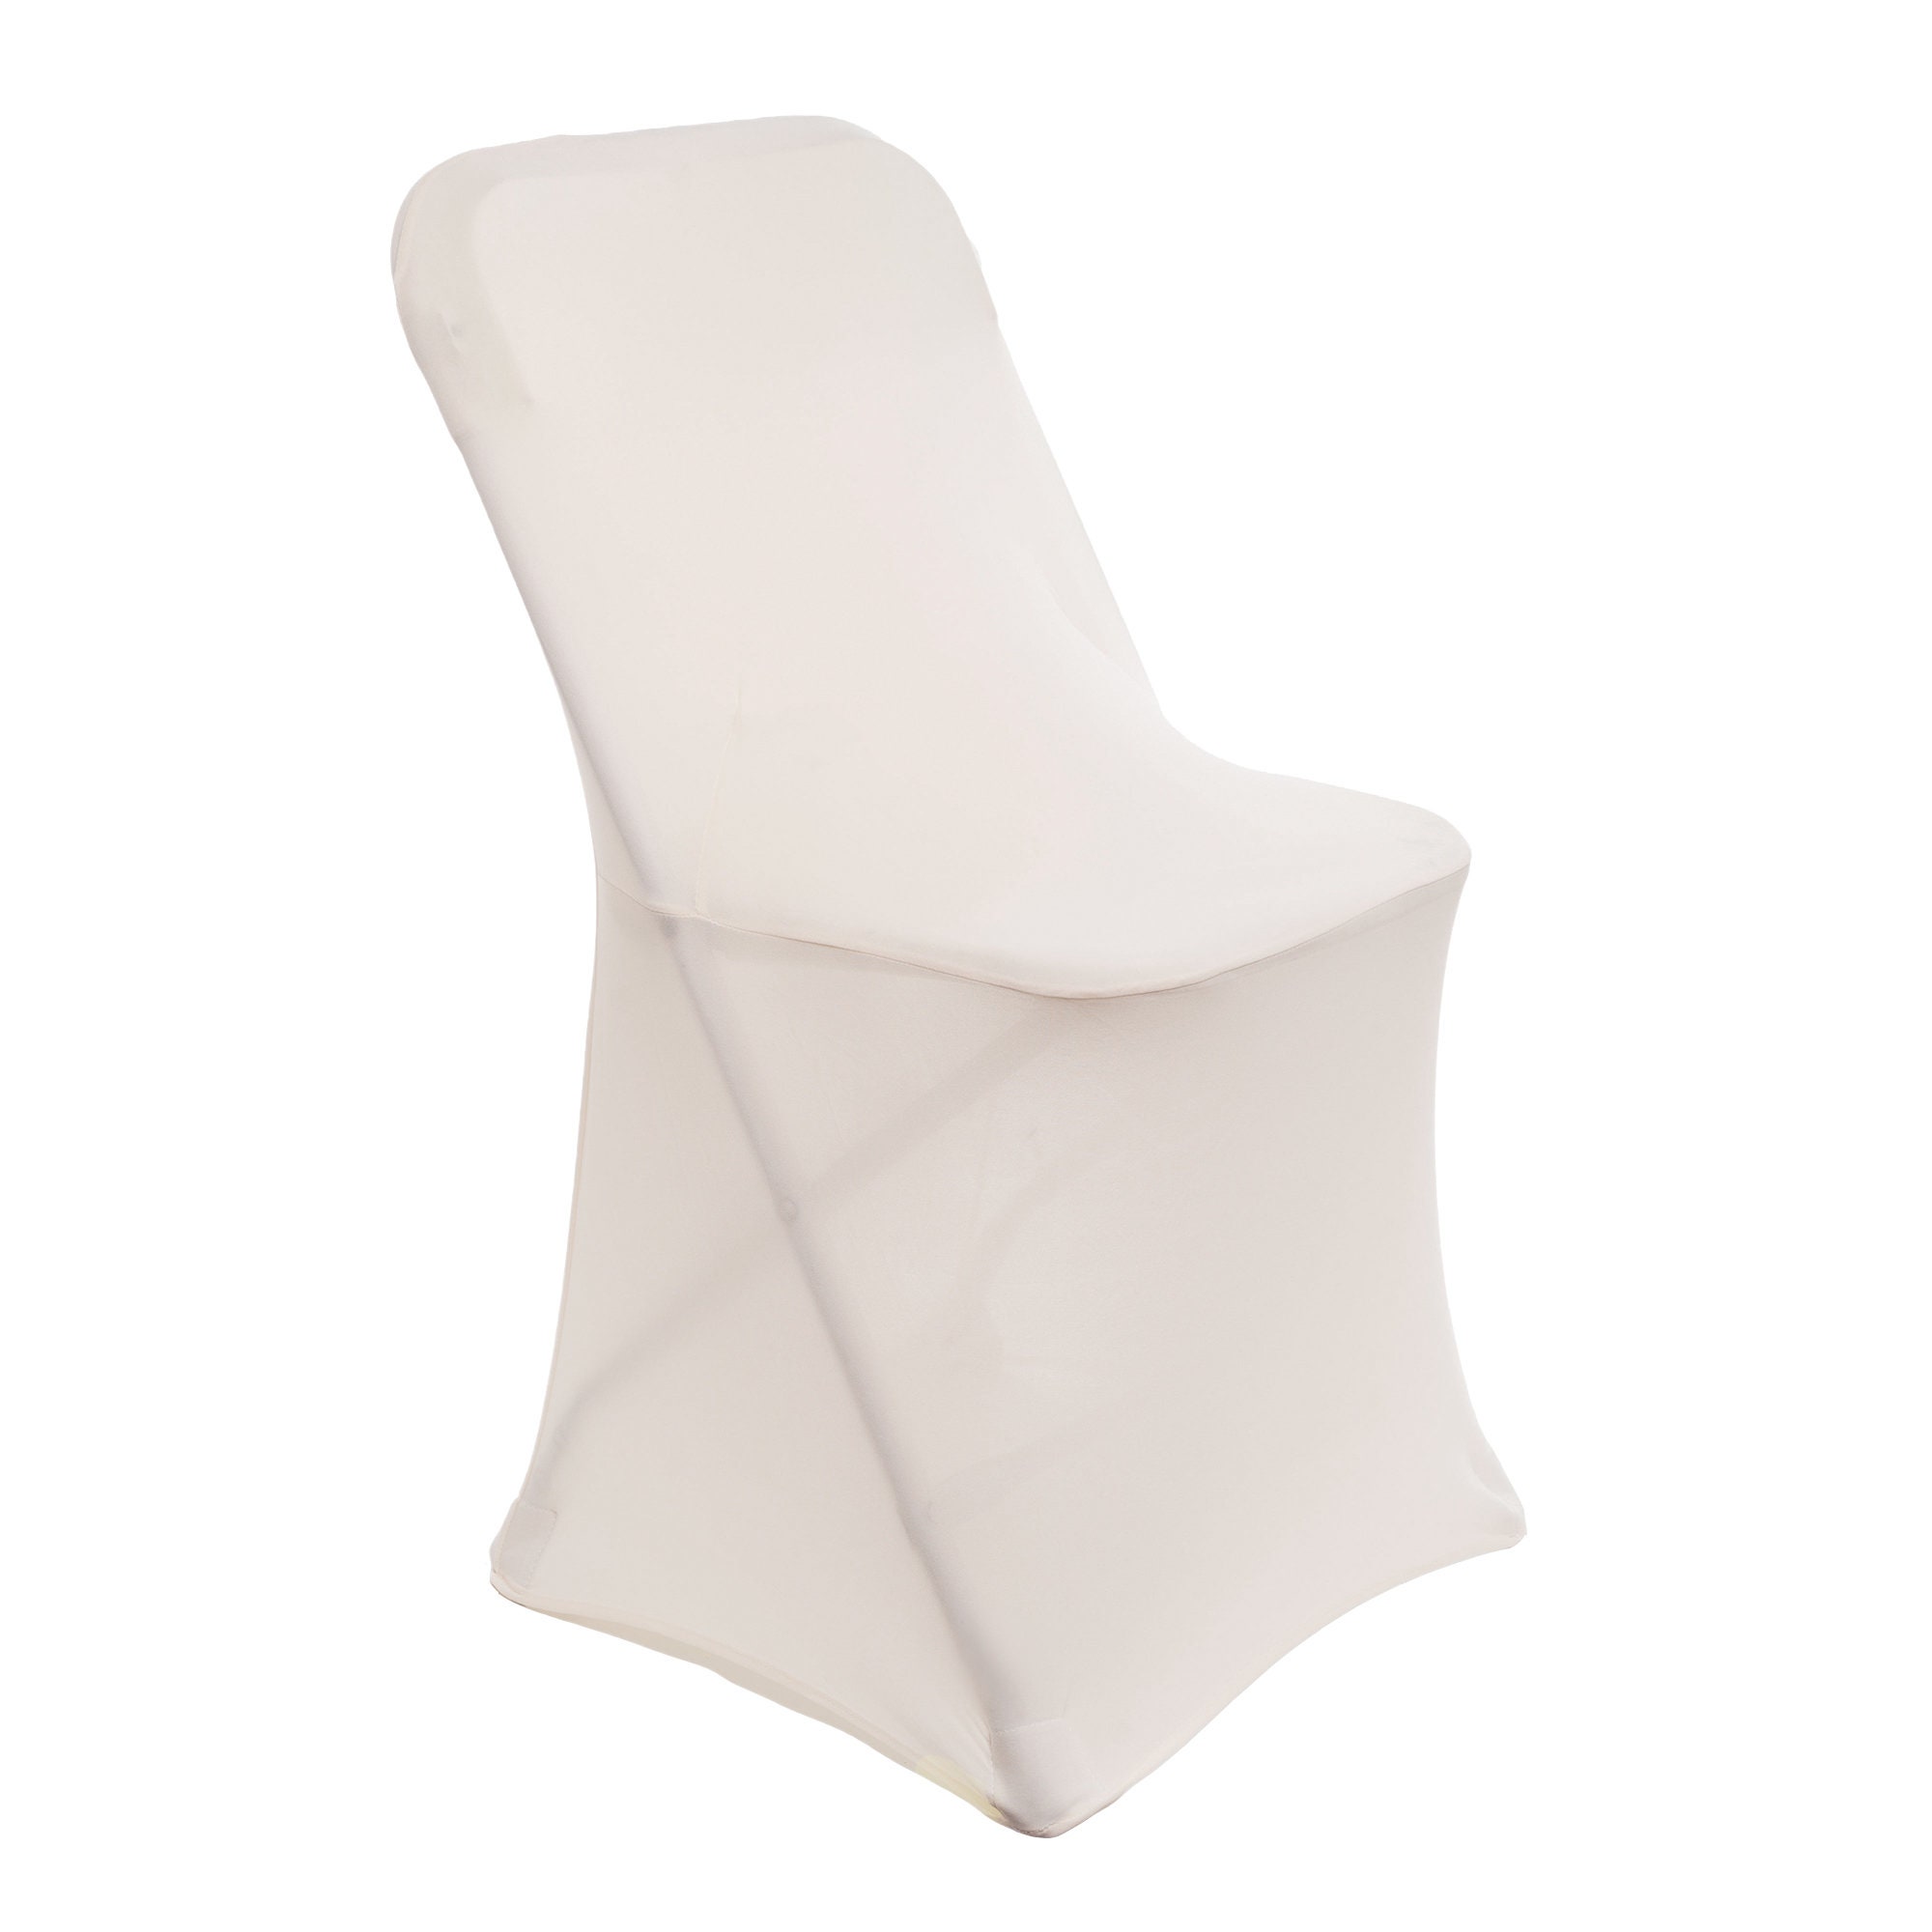 Chair Covers spandex Lycra universale Slipcovers sedia da pranzo di nozze banchetto partito arco anteriore Nero 50 